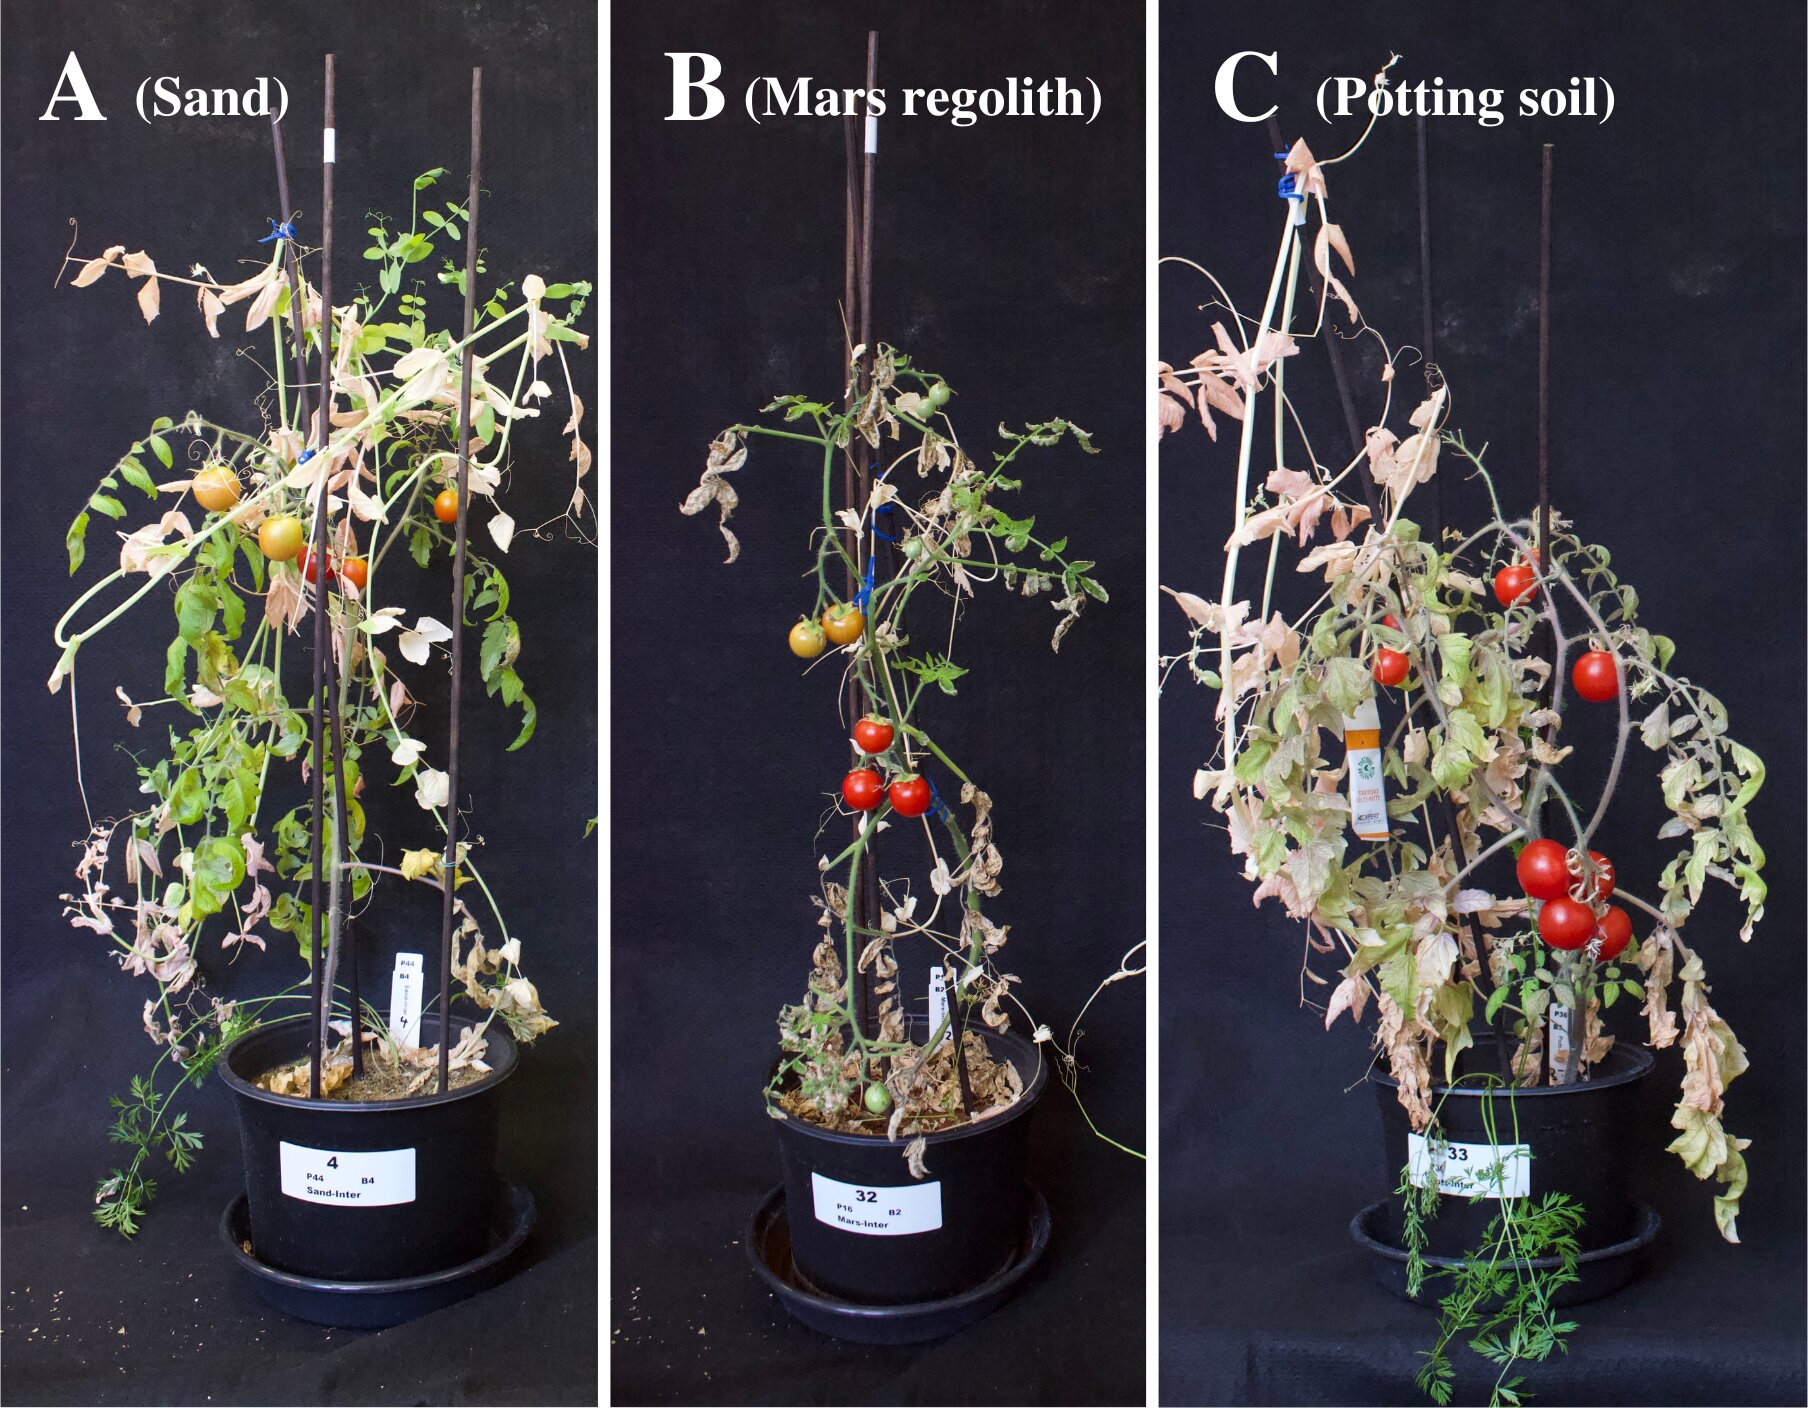 Alcune piante utilizzate per l'esperimento